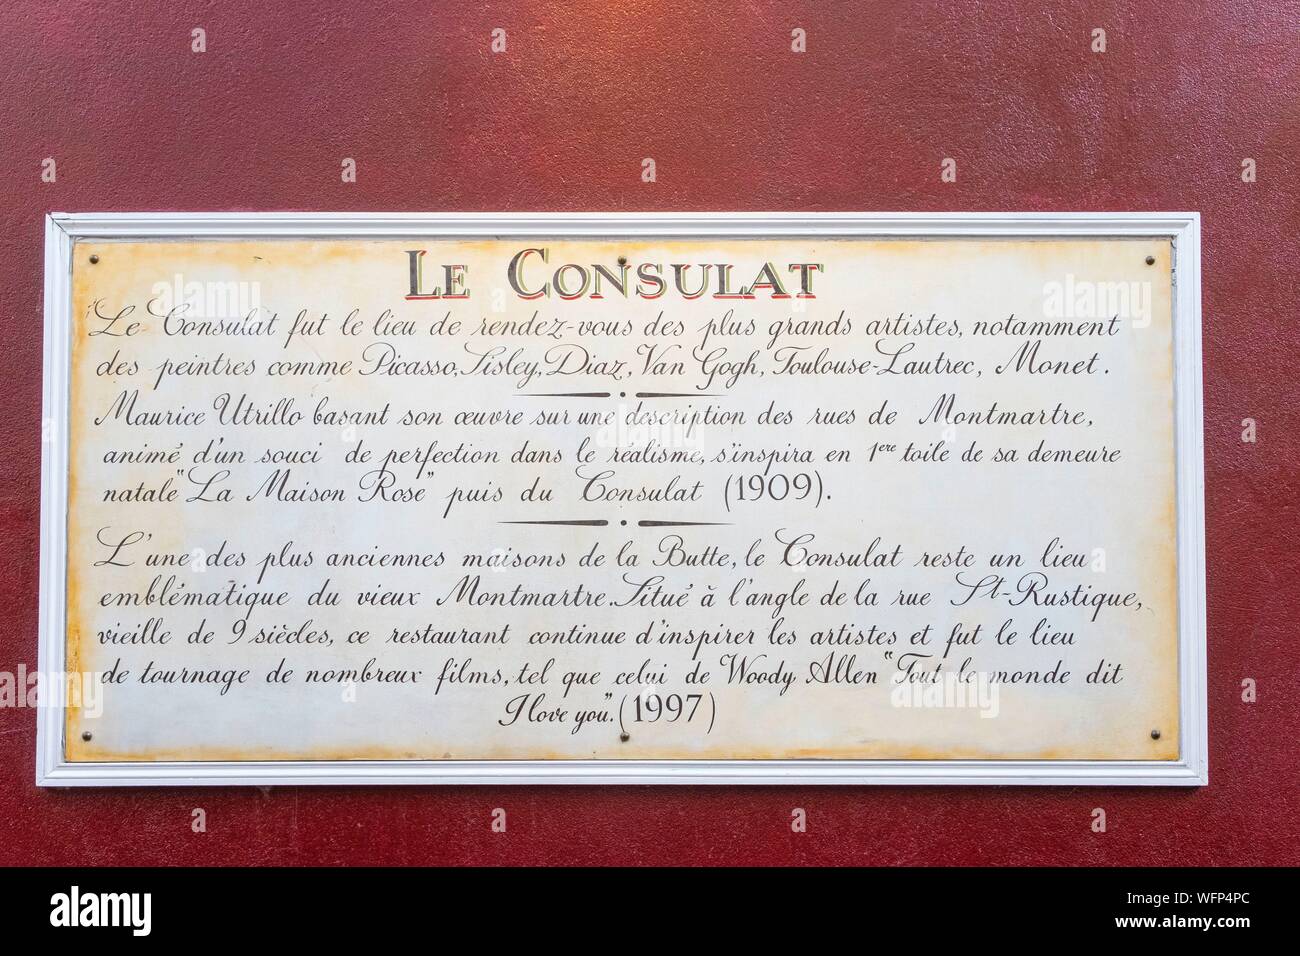 France, Paris, Butte Montmartre, la Rue Saint rustique, le café restaurant Le Consulat, plaque commémorant les artistes qui fréquentaient les lieux Banque D'Images